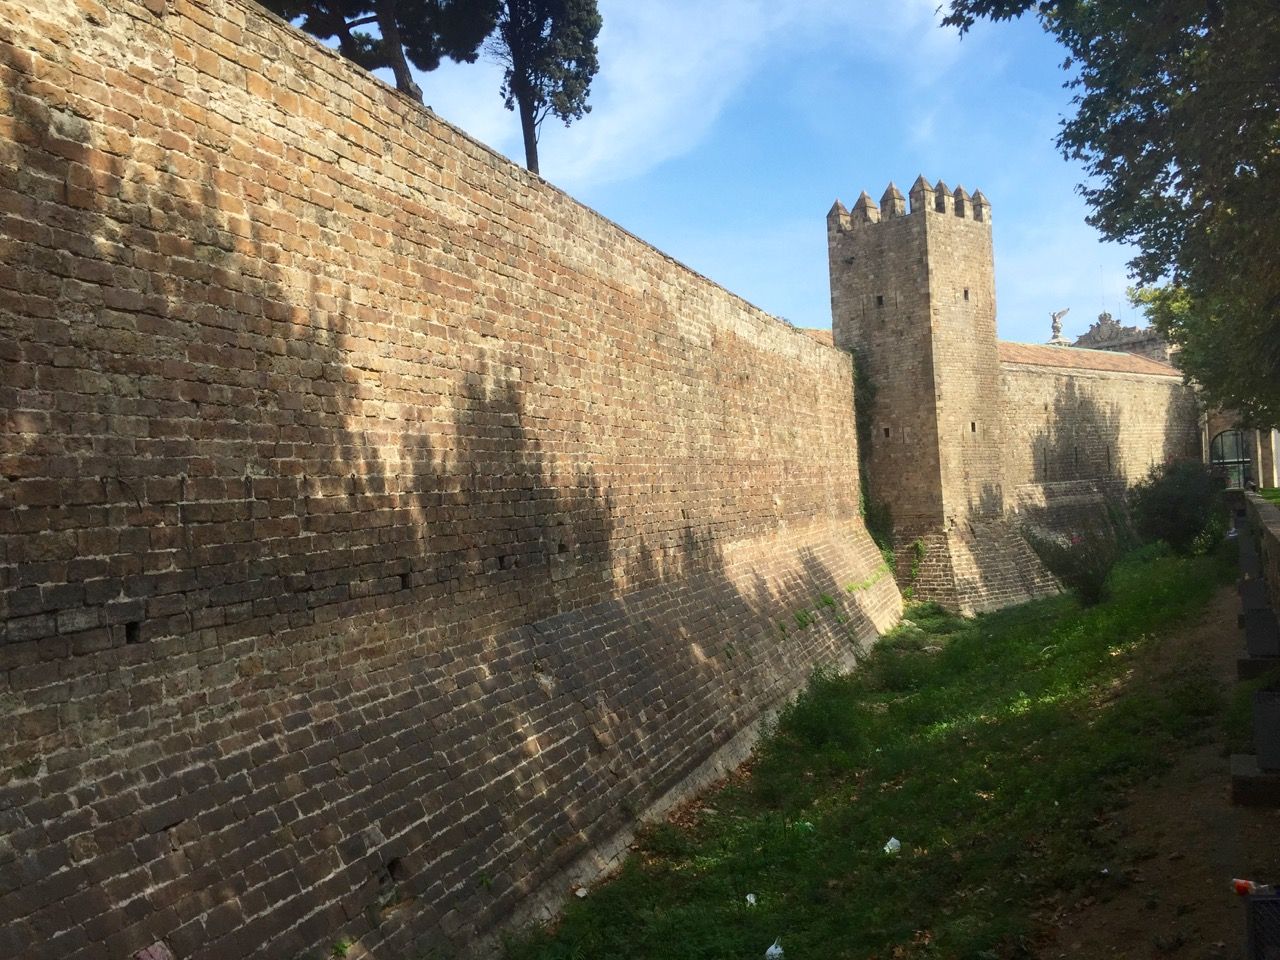 A castle wall.